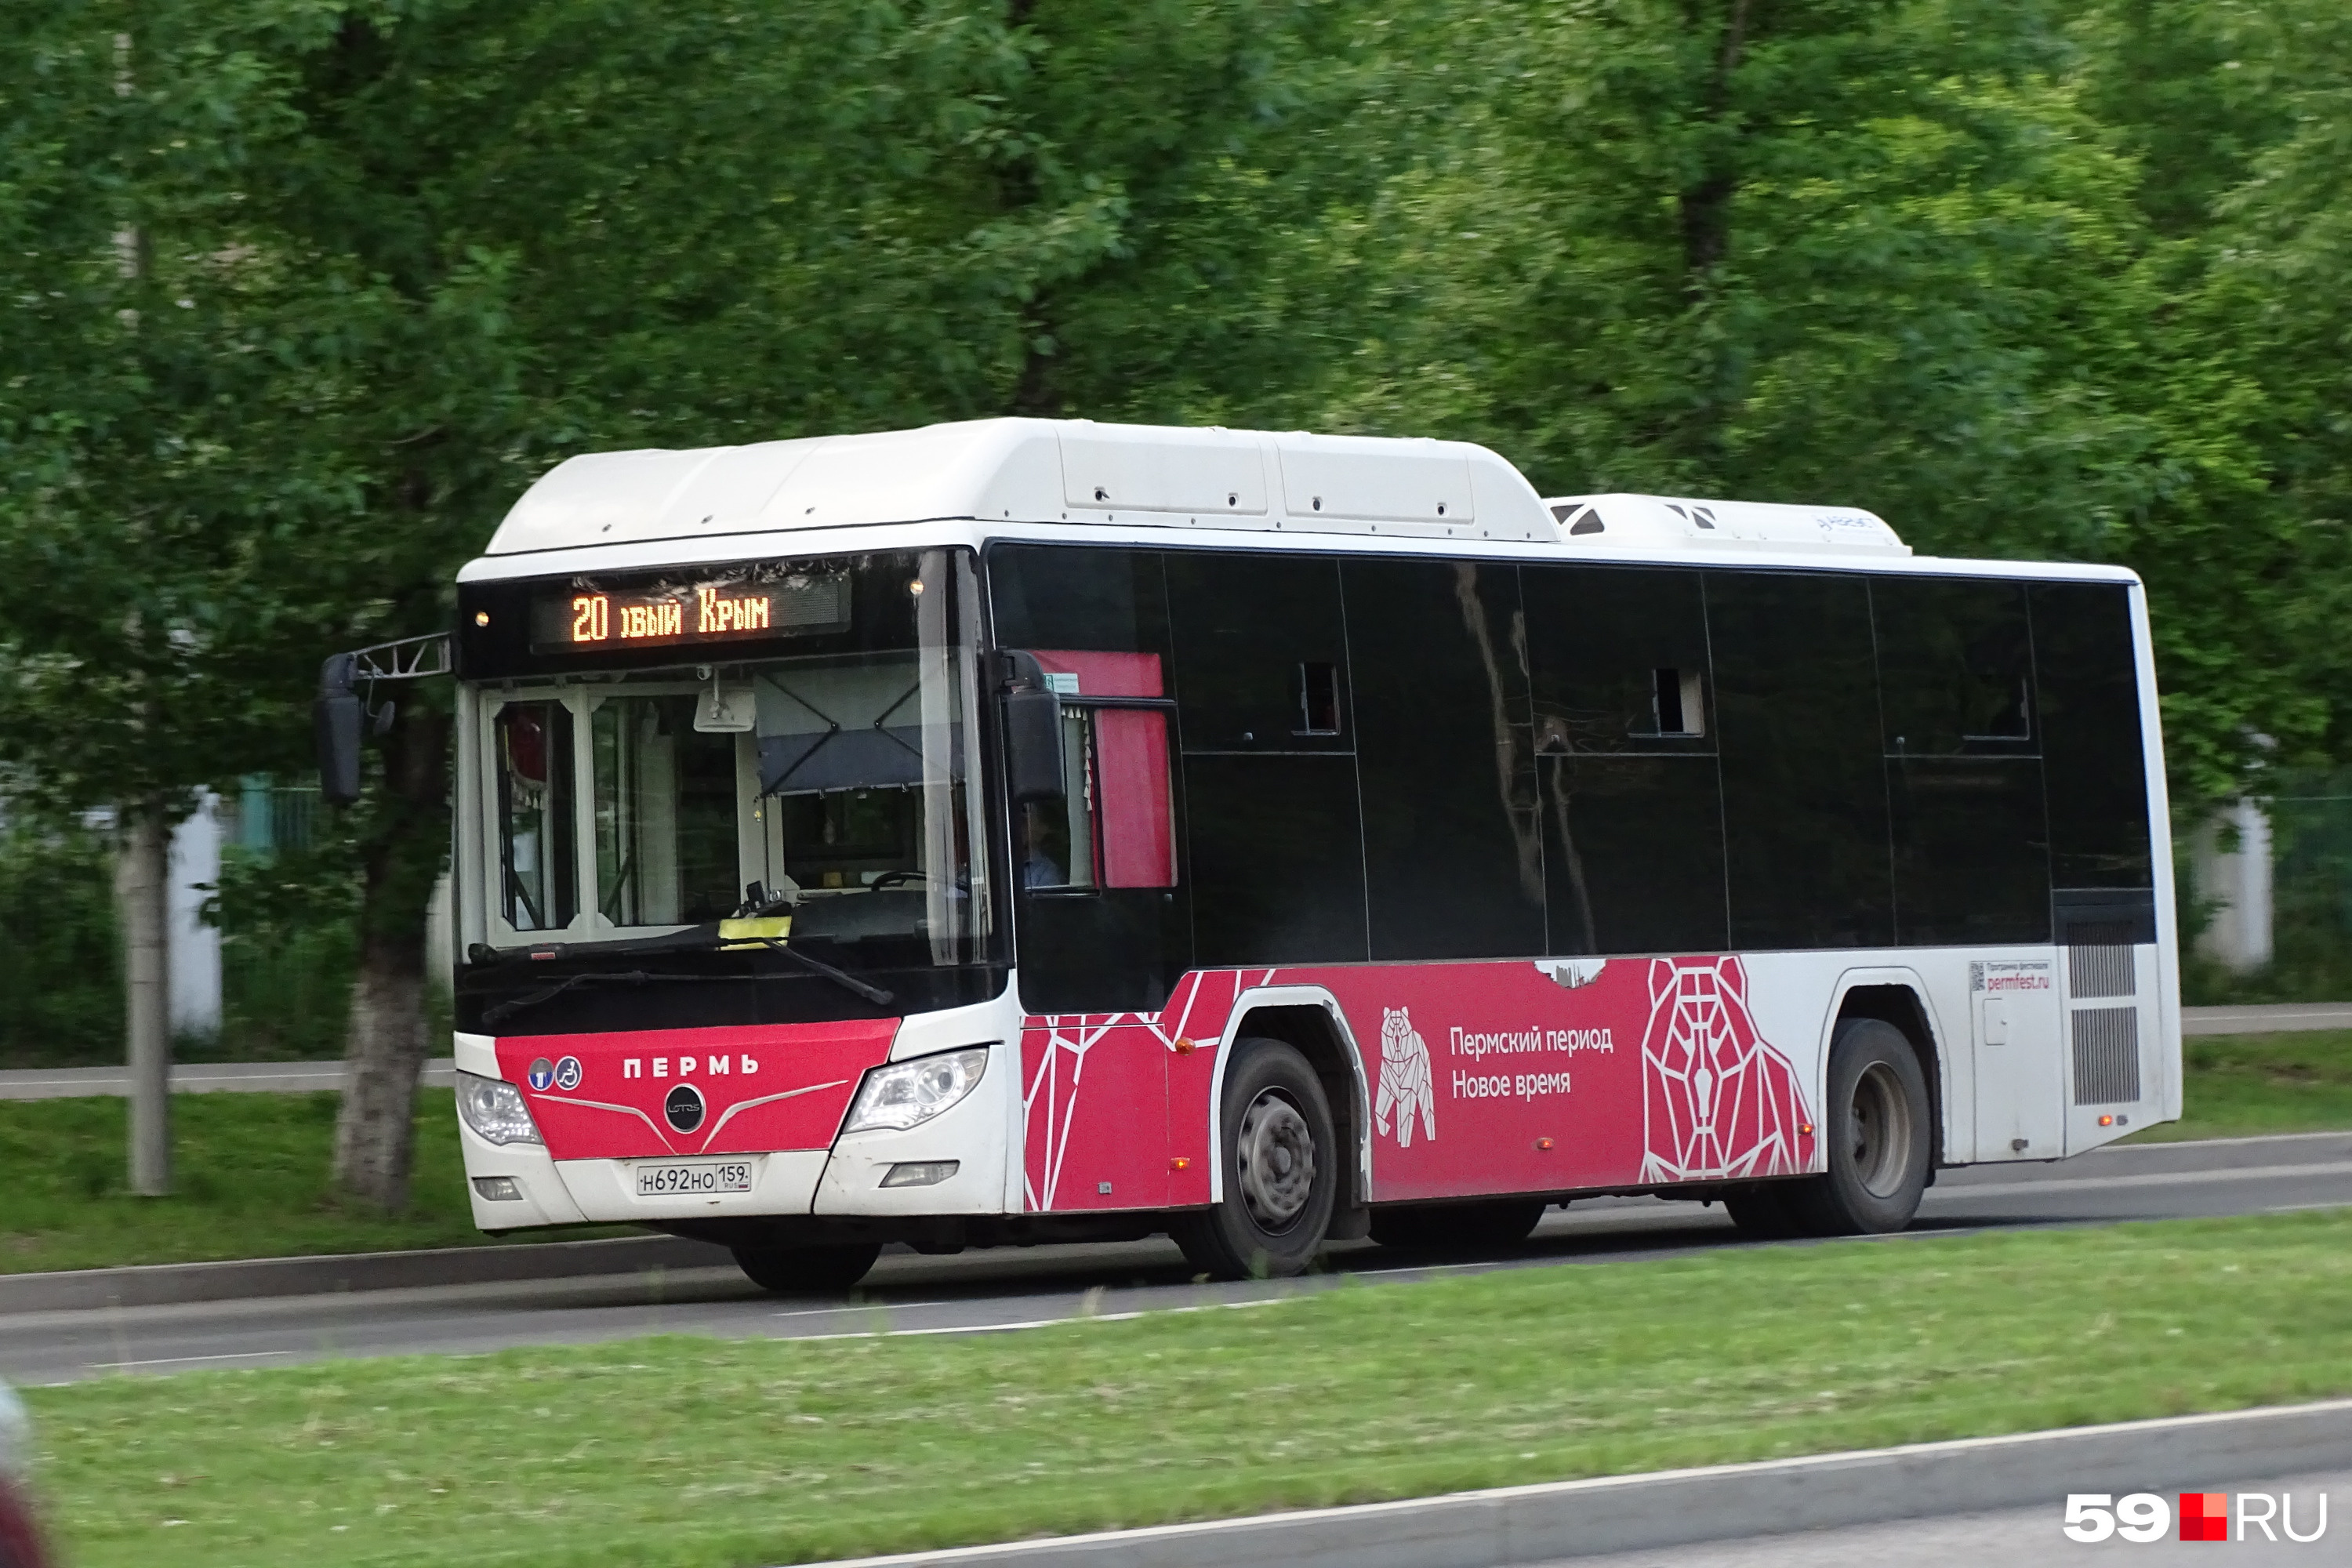 Работа автобус пермь. Быстрые автобусы. Пермские автобусы. Пермский автобус 2022. Самый большой автобус.